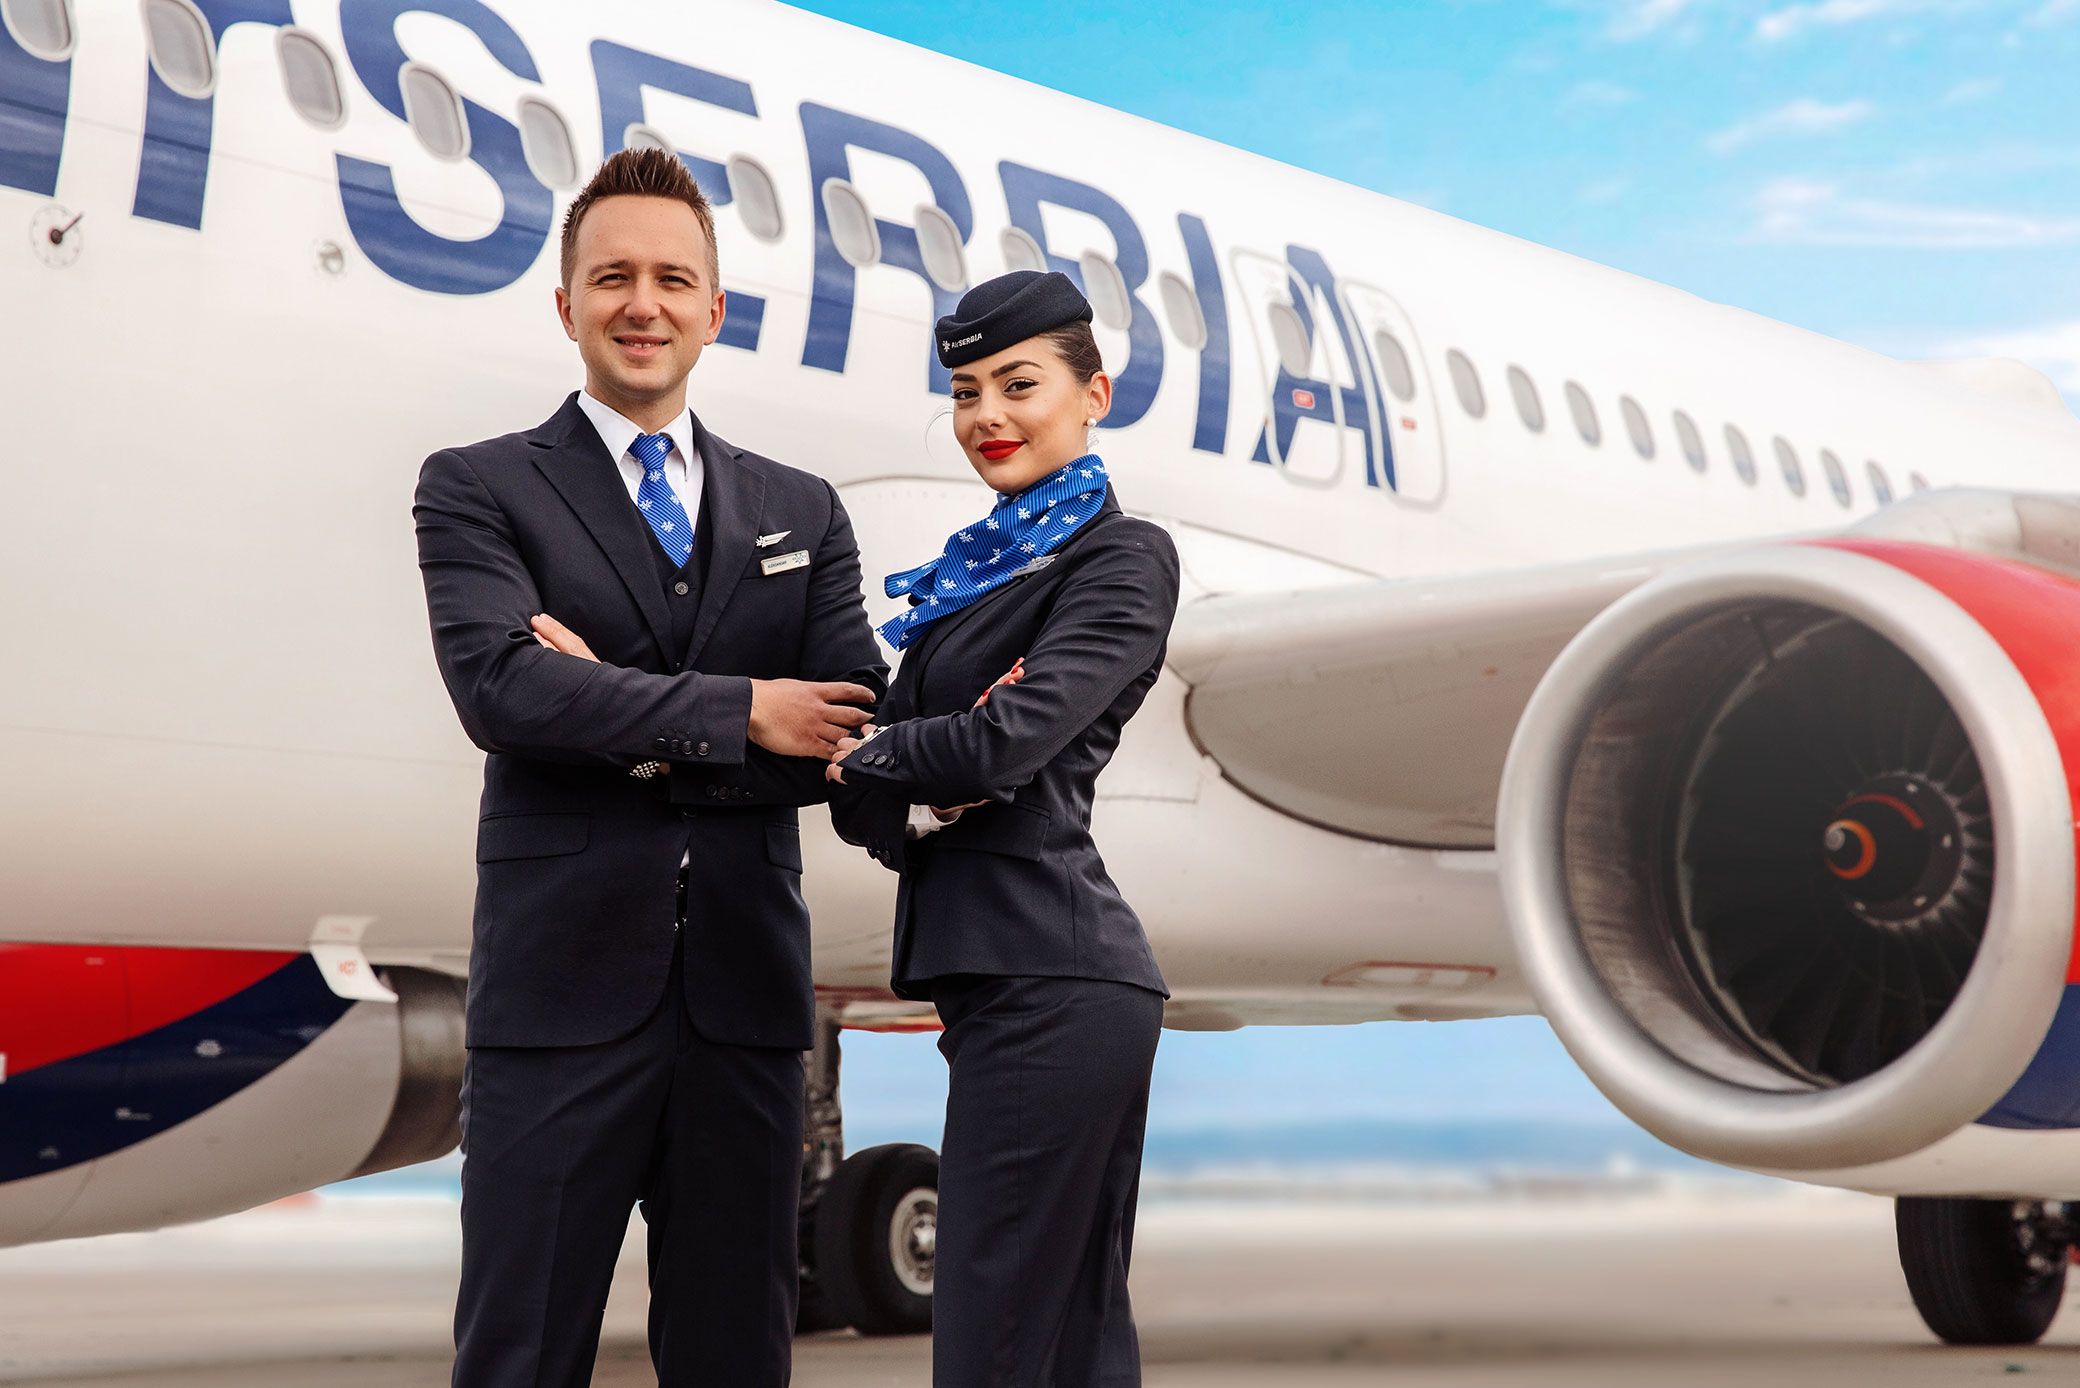 Air Serbia cabin crew